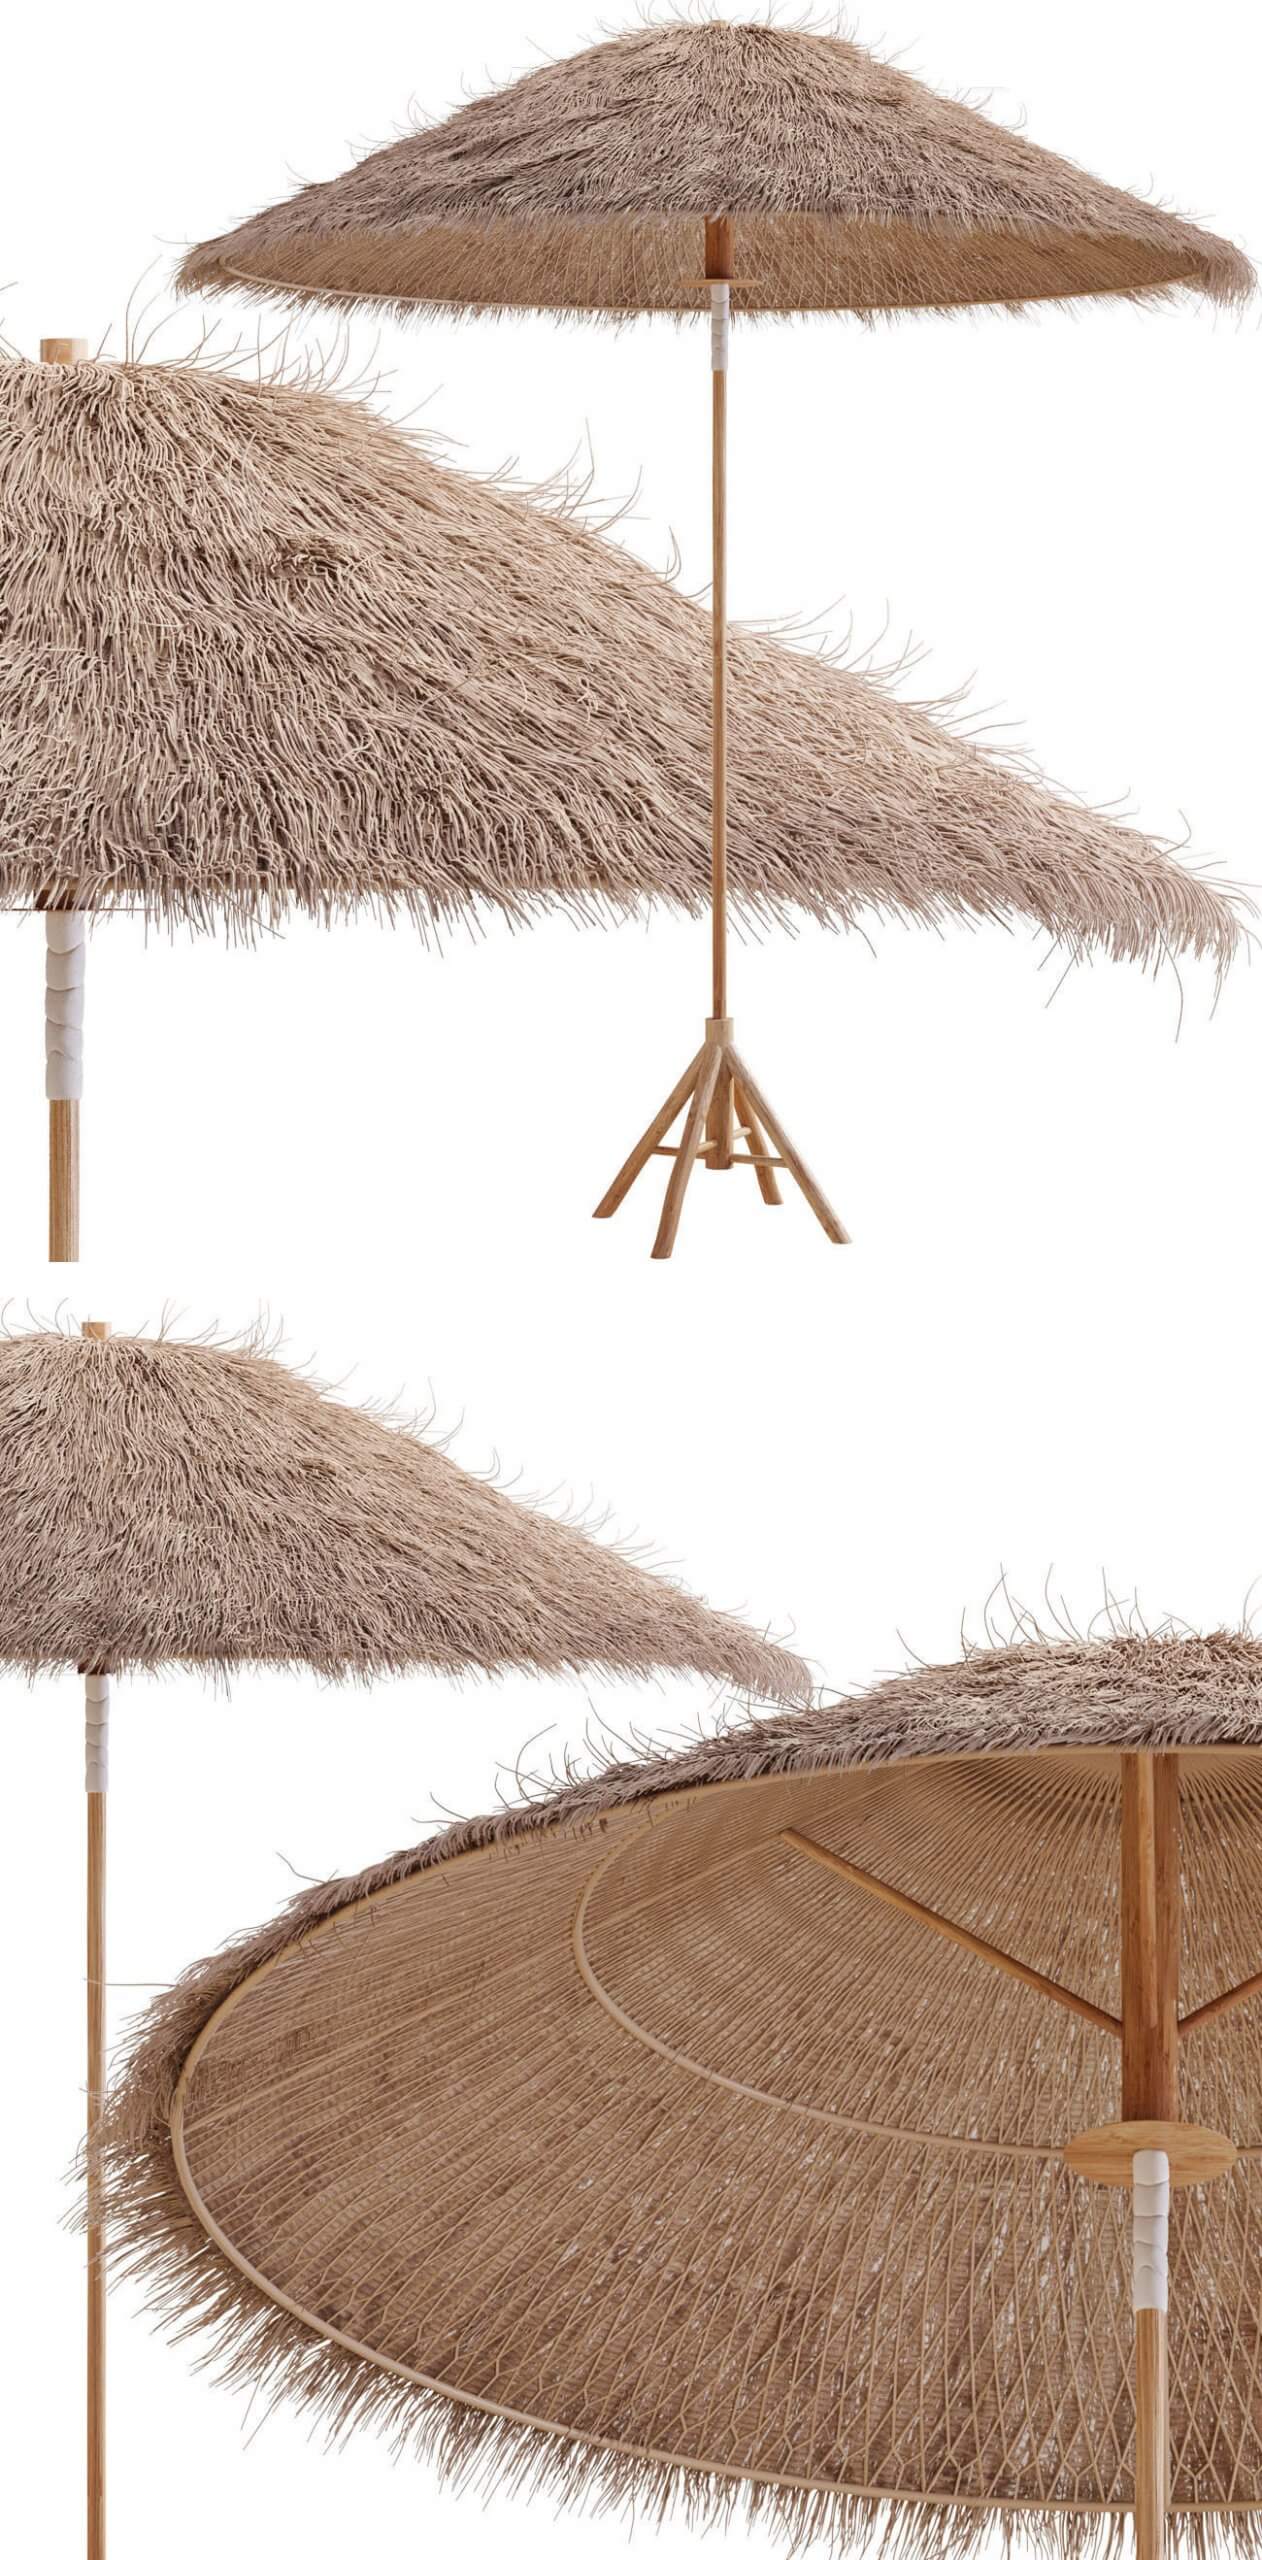 顶部铺满芭蕉叶的竹伞 户外露台遮阳伞3D模型（FBX,MAX）插图